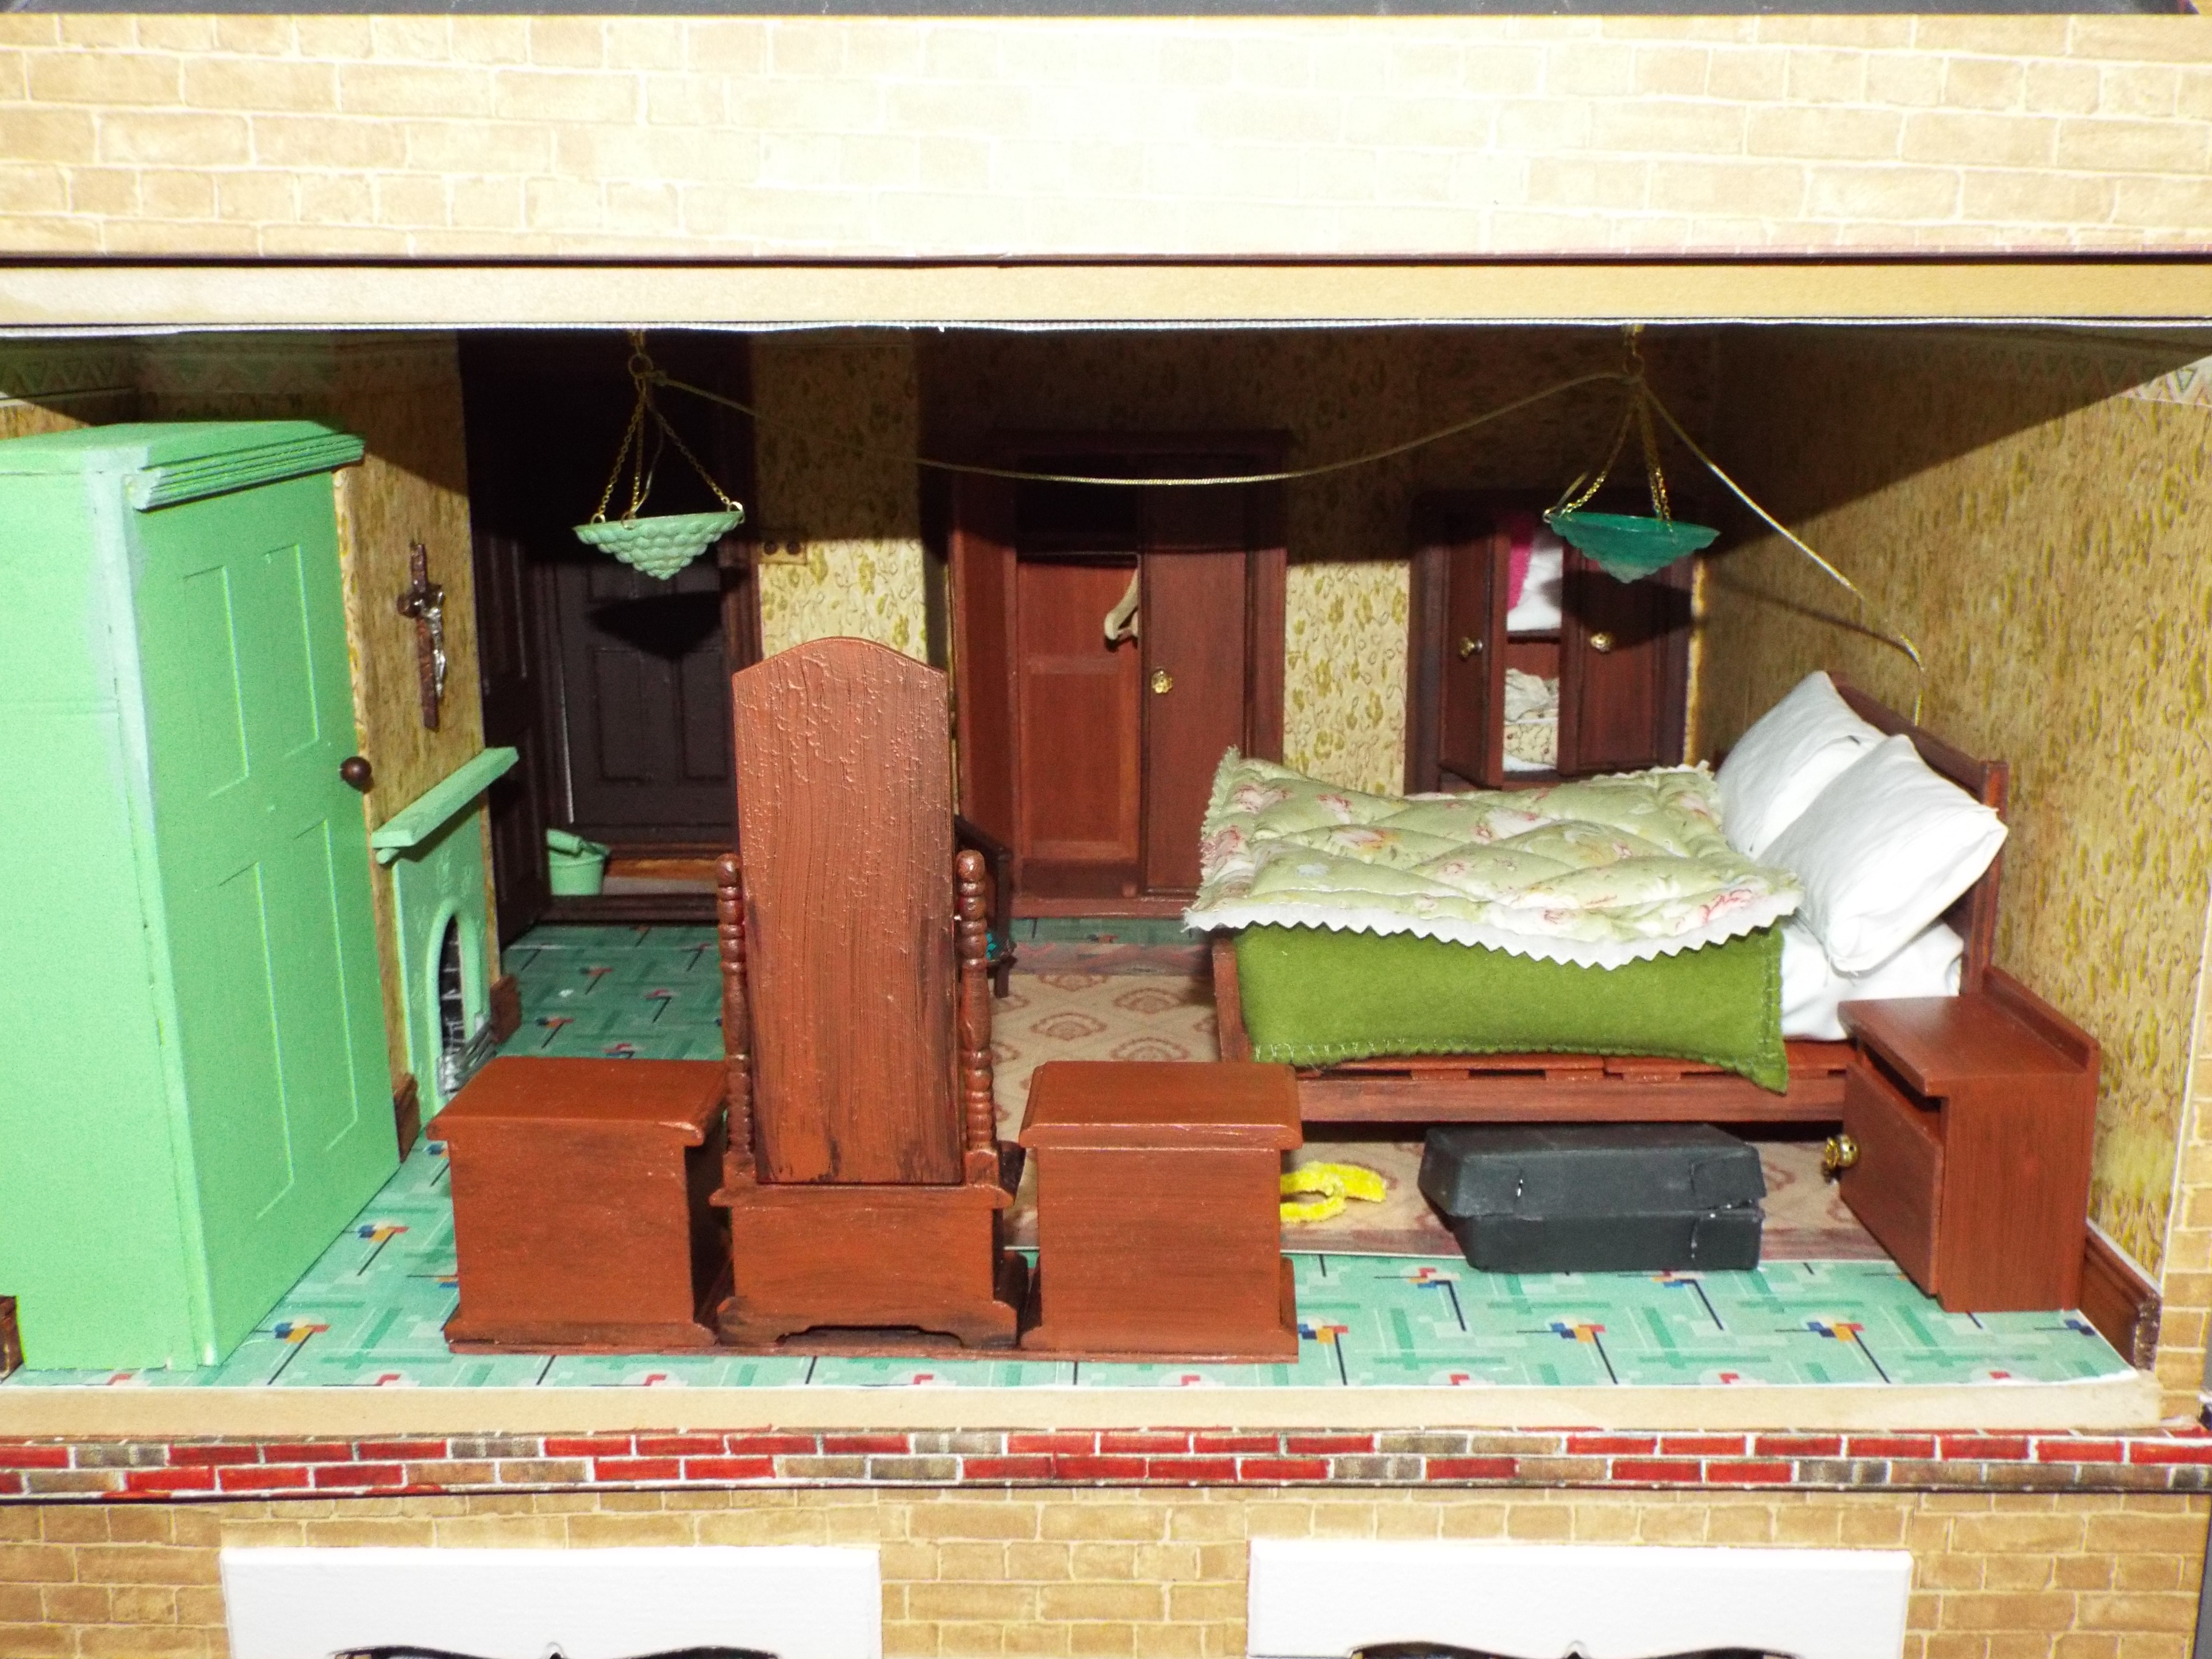 Dolls House - An Edwardian style dolls house shop 'Jennywren's Dolls House Shop'. - Image 5 of 8